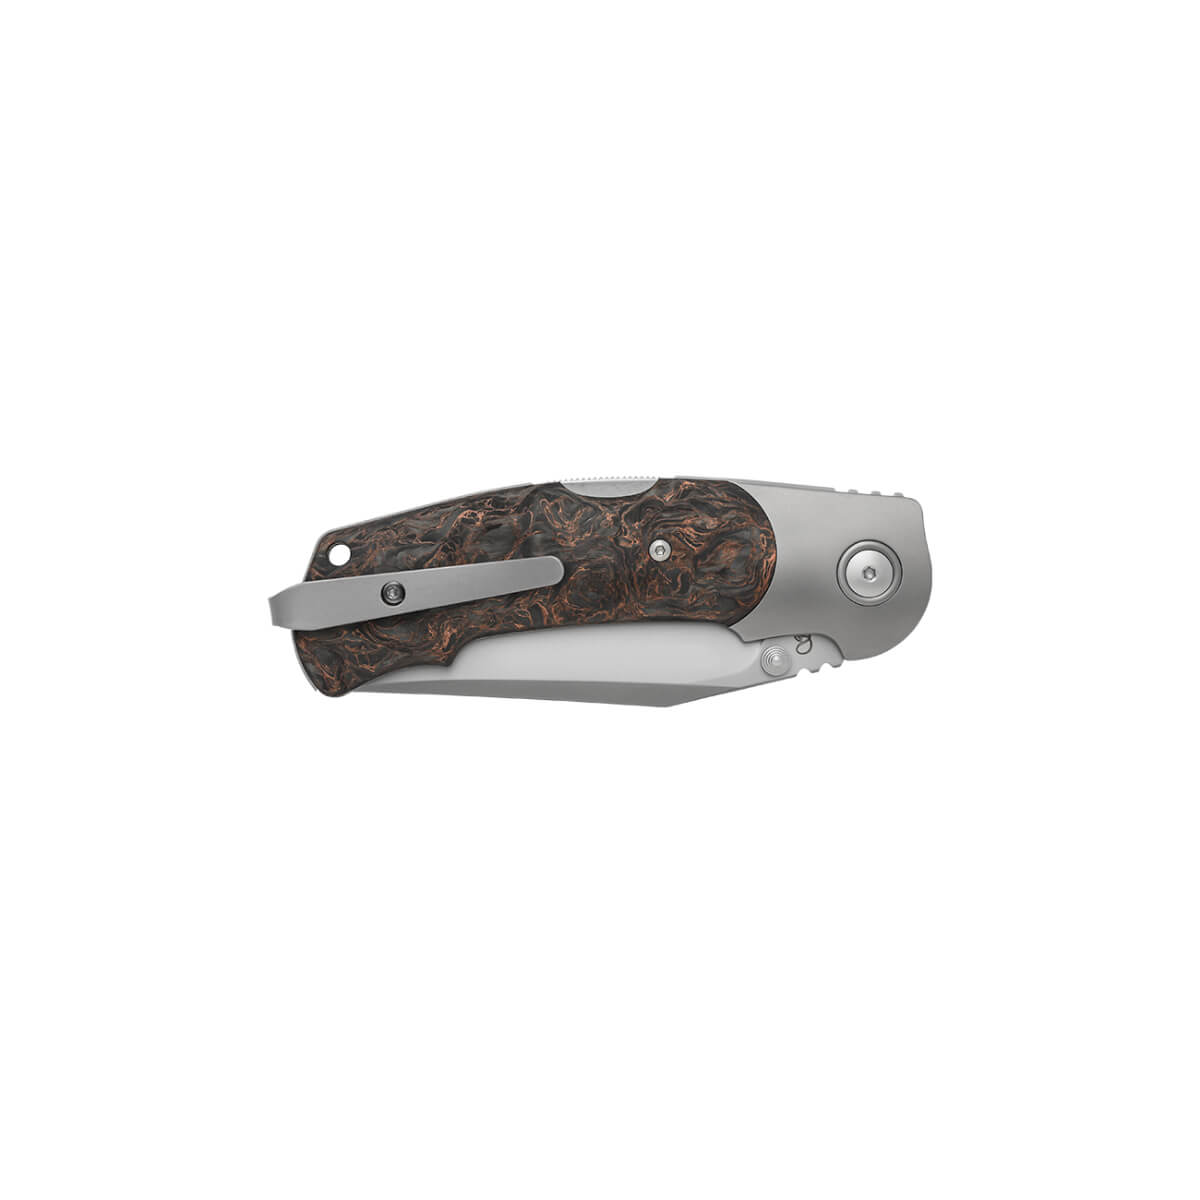 Viper Turn &quot;Dark Matter&quot; Copper Carbon Fibre Pocket Knife  Limited Edition